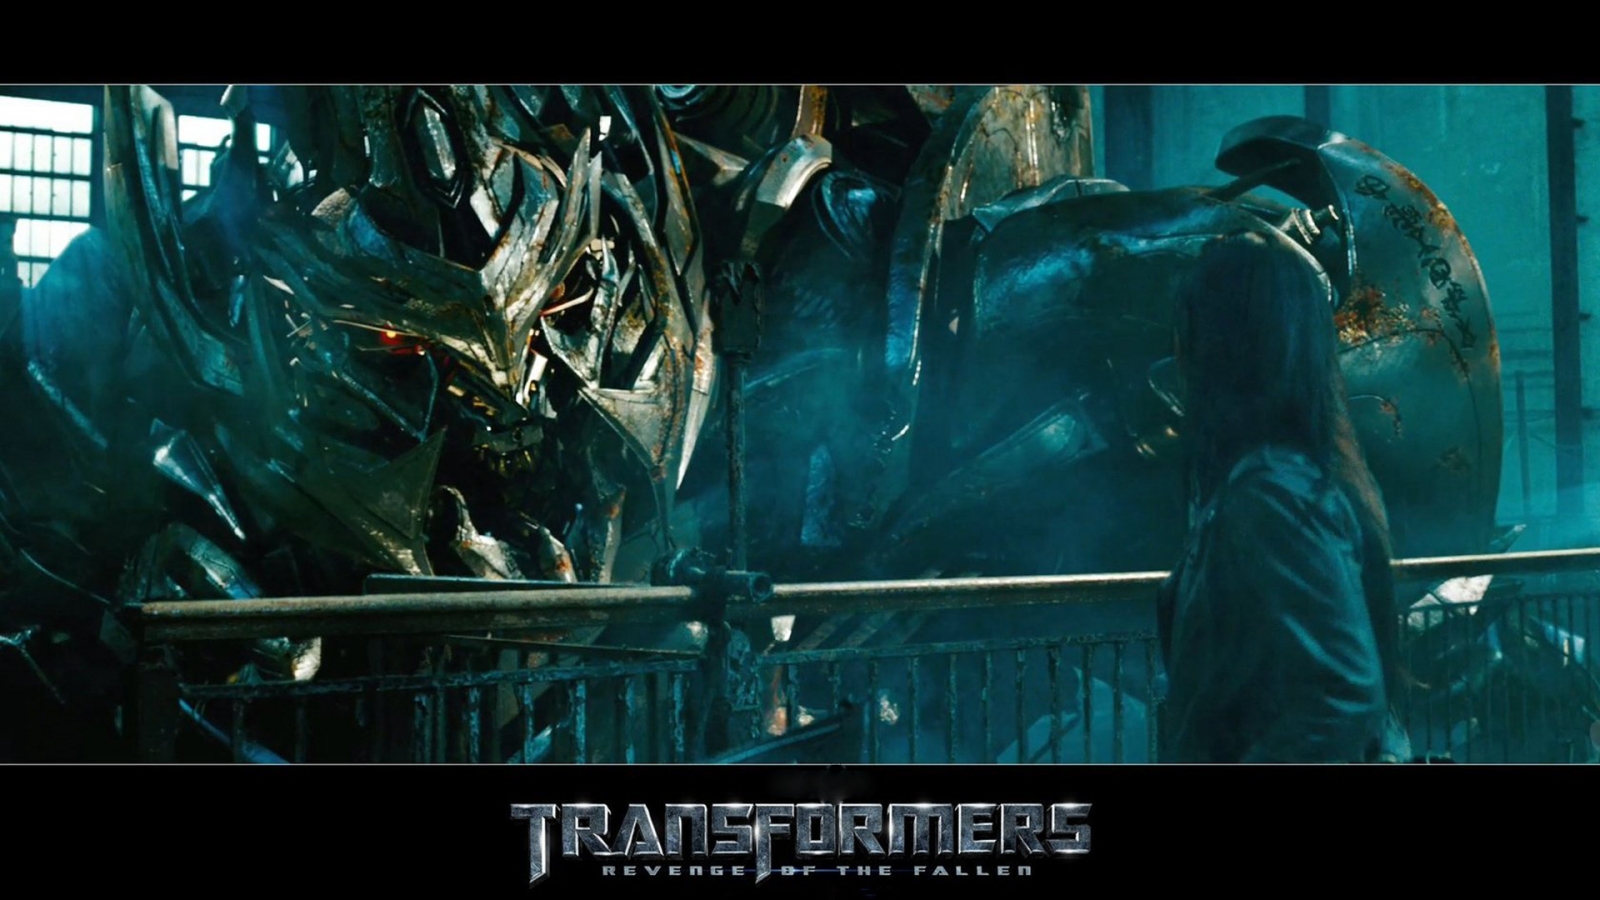 Transformers Revenge of the Fallen for 1600 x 900 HDTV resolution